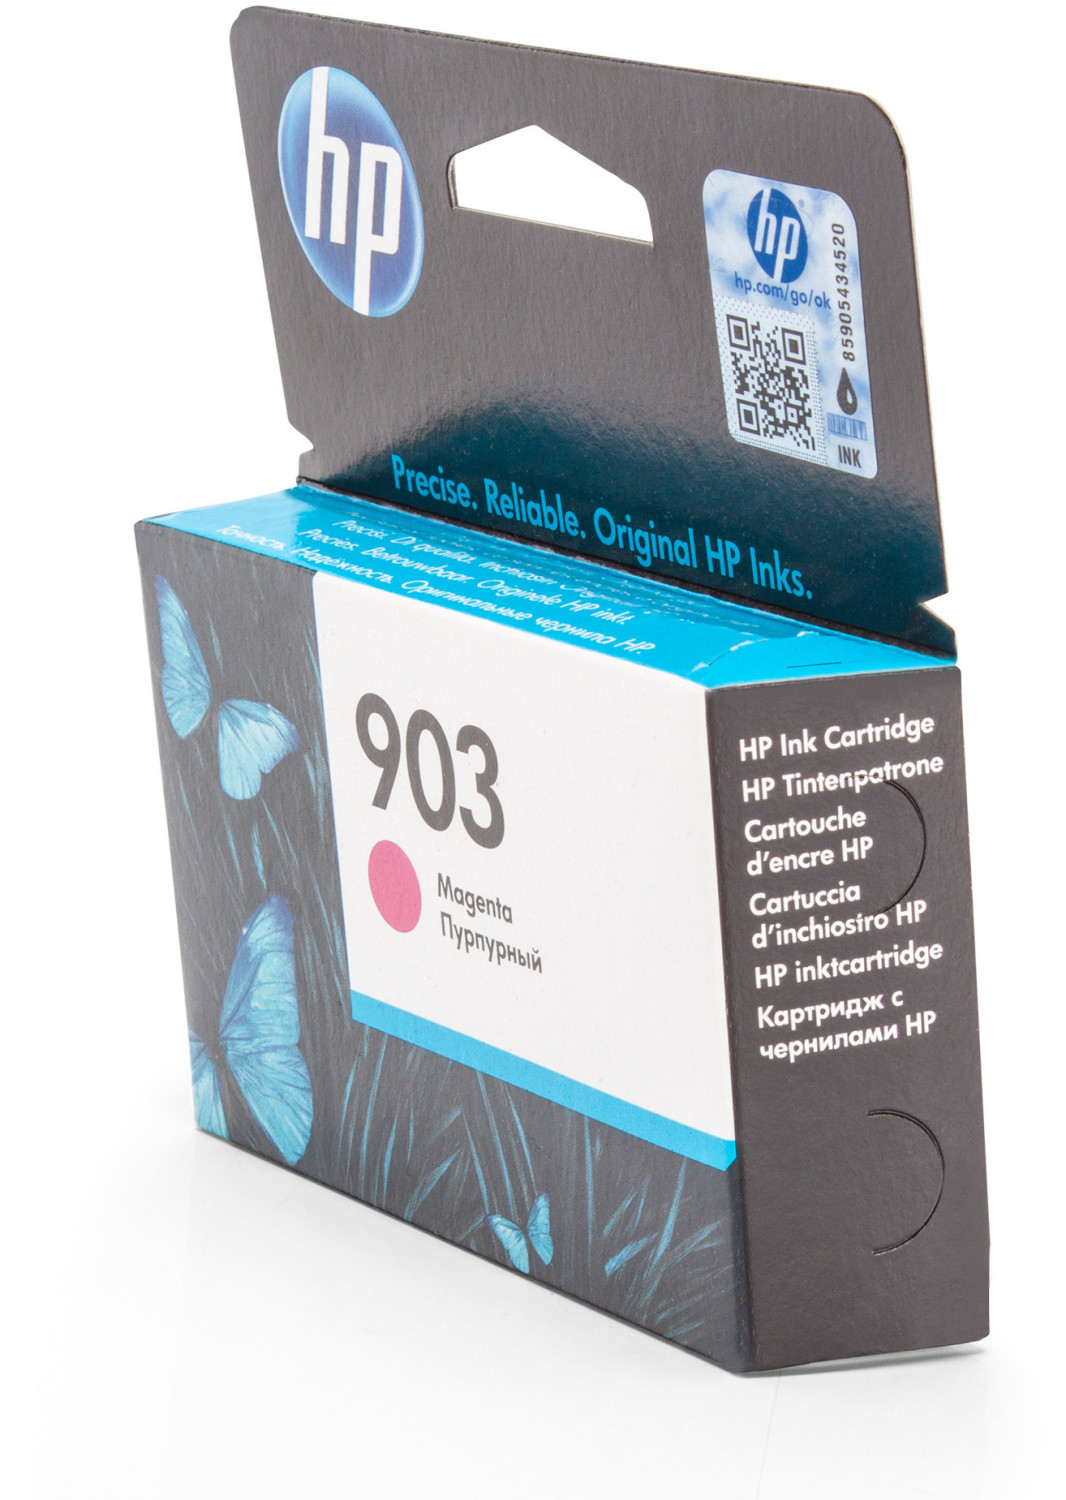 HP - Cartouche d'encre HP 903 magenta